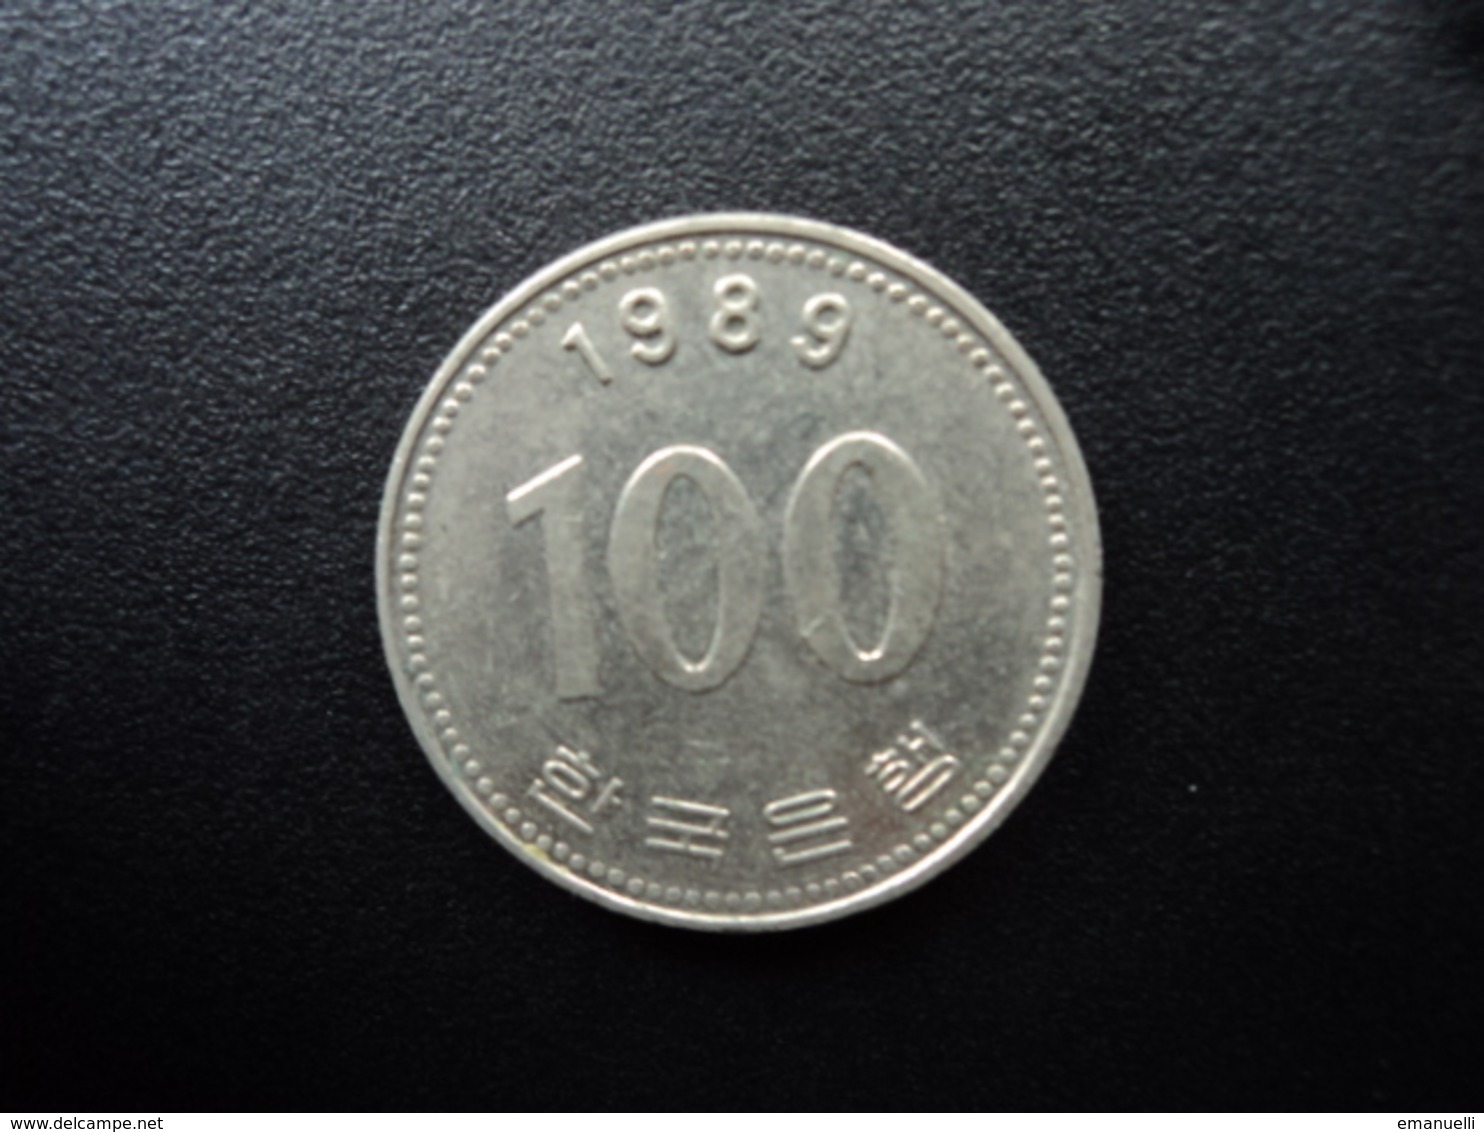 CORÉE DU SUD : 100 WON   1989   KM 35.2    SUP - Coreal Del Sur